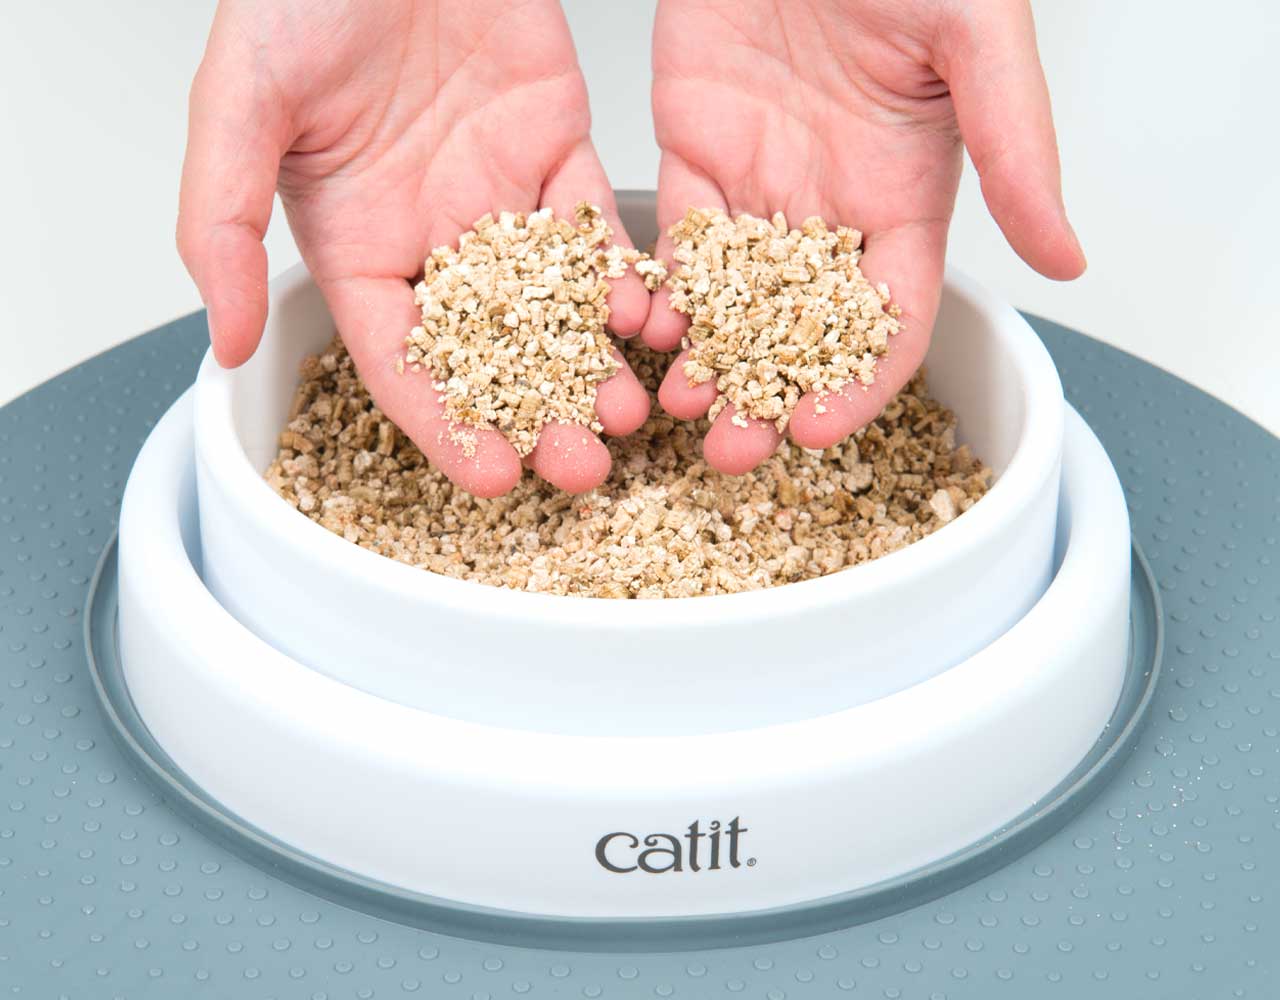 Utiliser de la vermiculite au lieu de la terre est moins salissant et garde vos mains propres